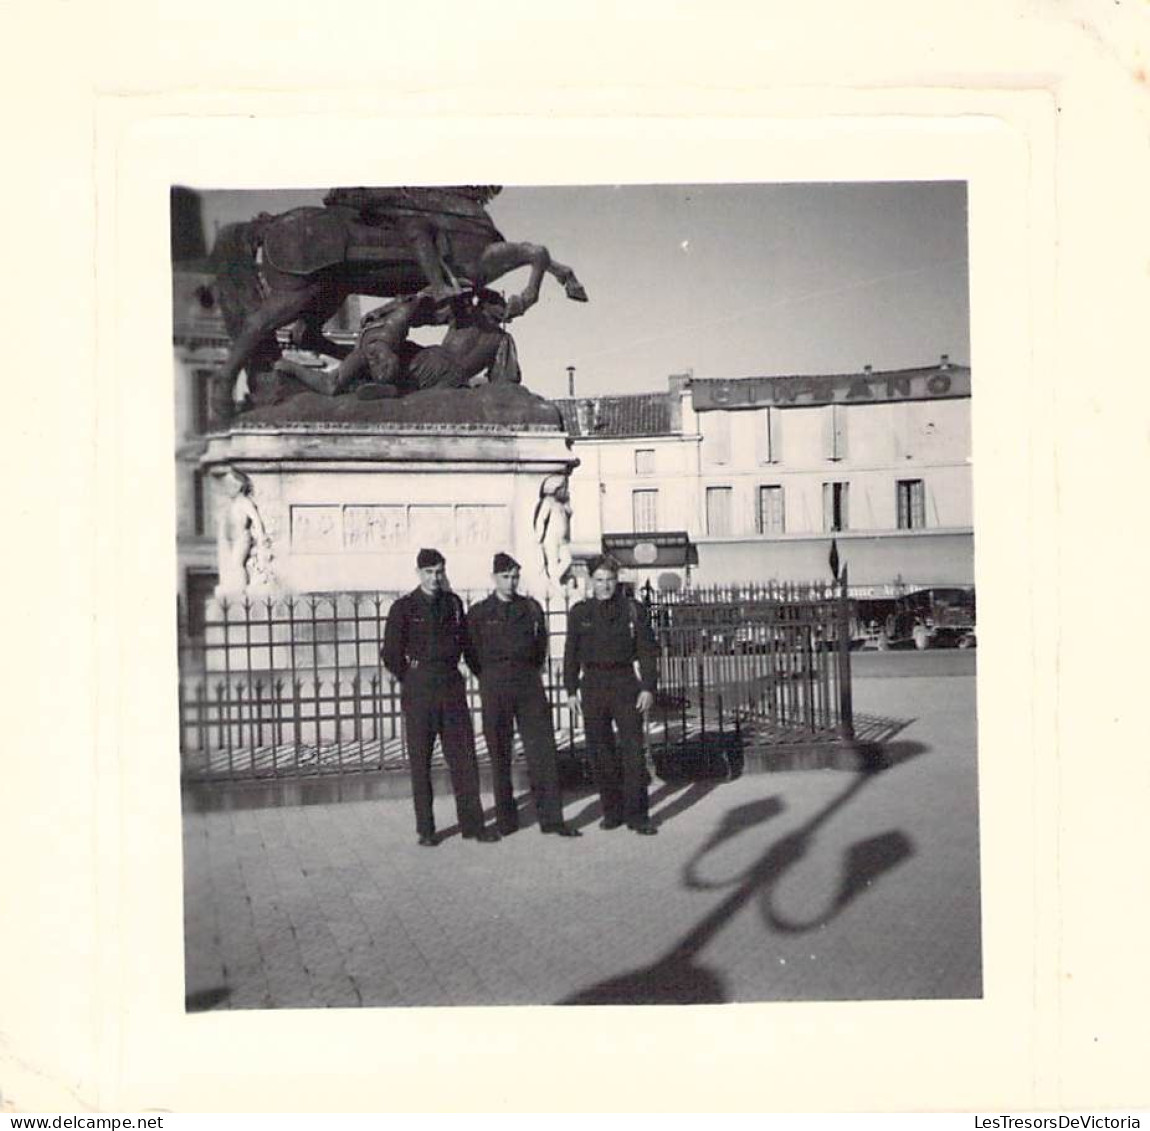 Photographie - Lot de 26 Photos militaires - Freibourg - Cognac - Service militaire 1949/1950